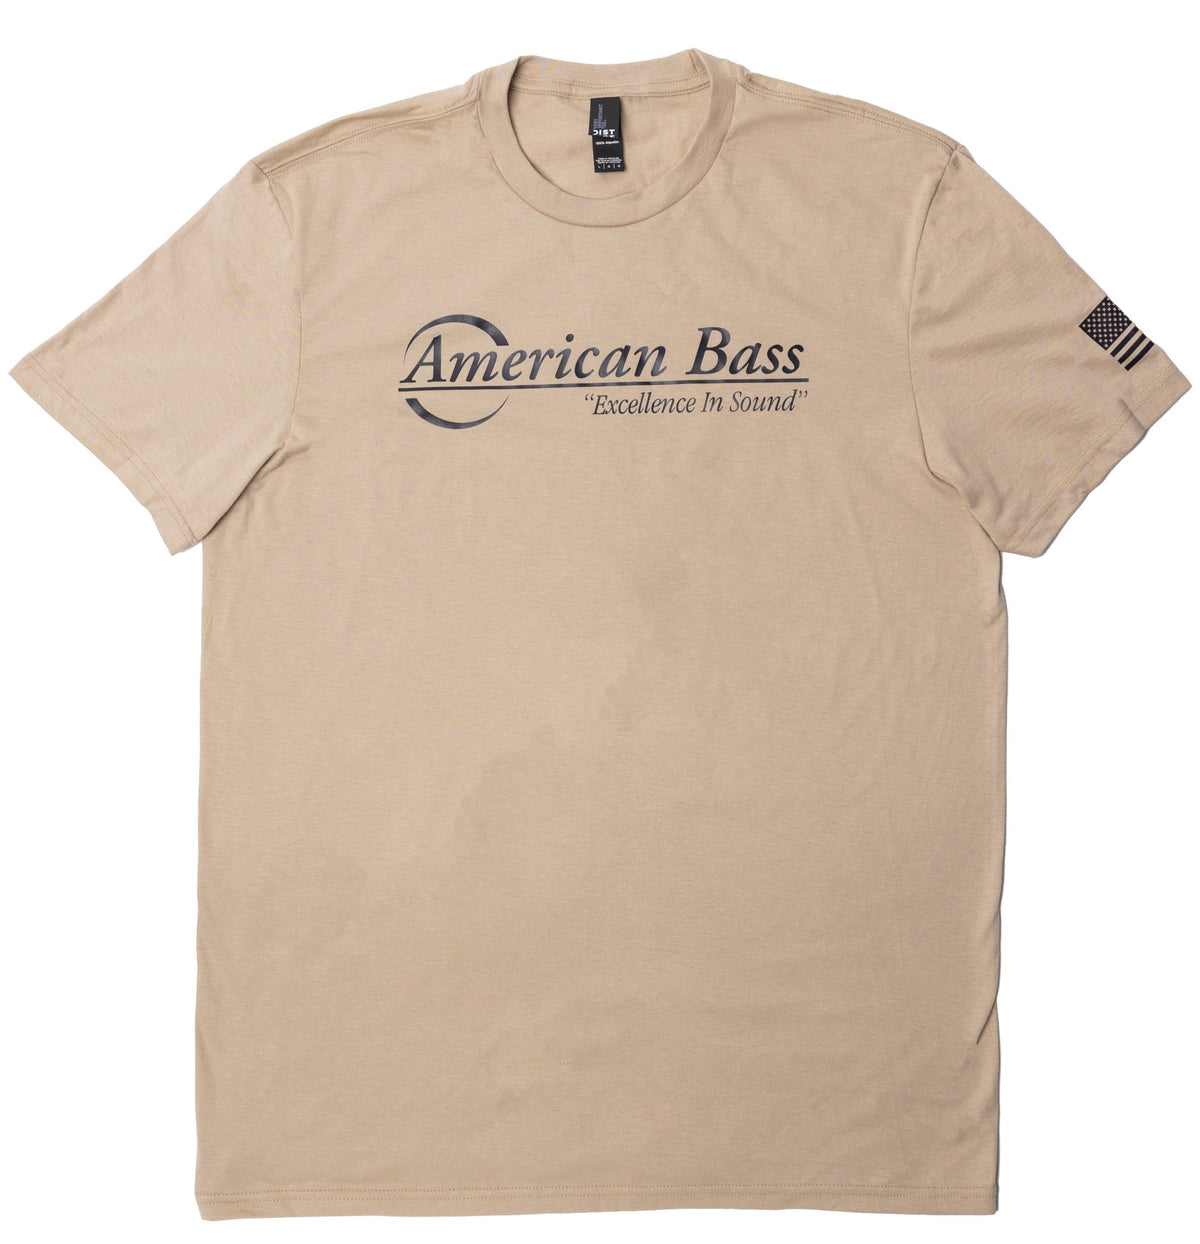 American Bass T - Shirt (Desert Sand) - American Bass Audio